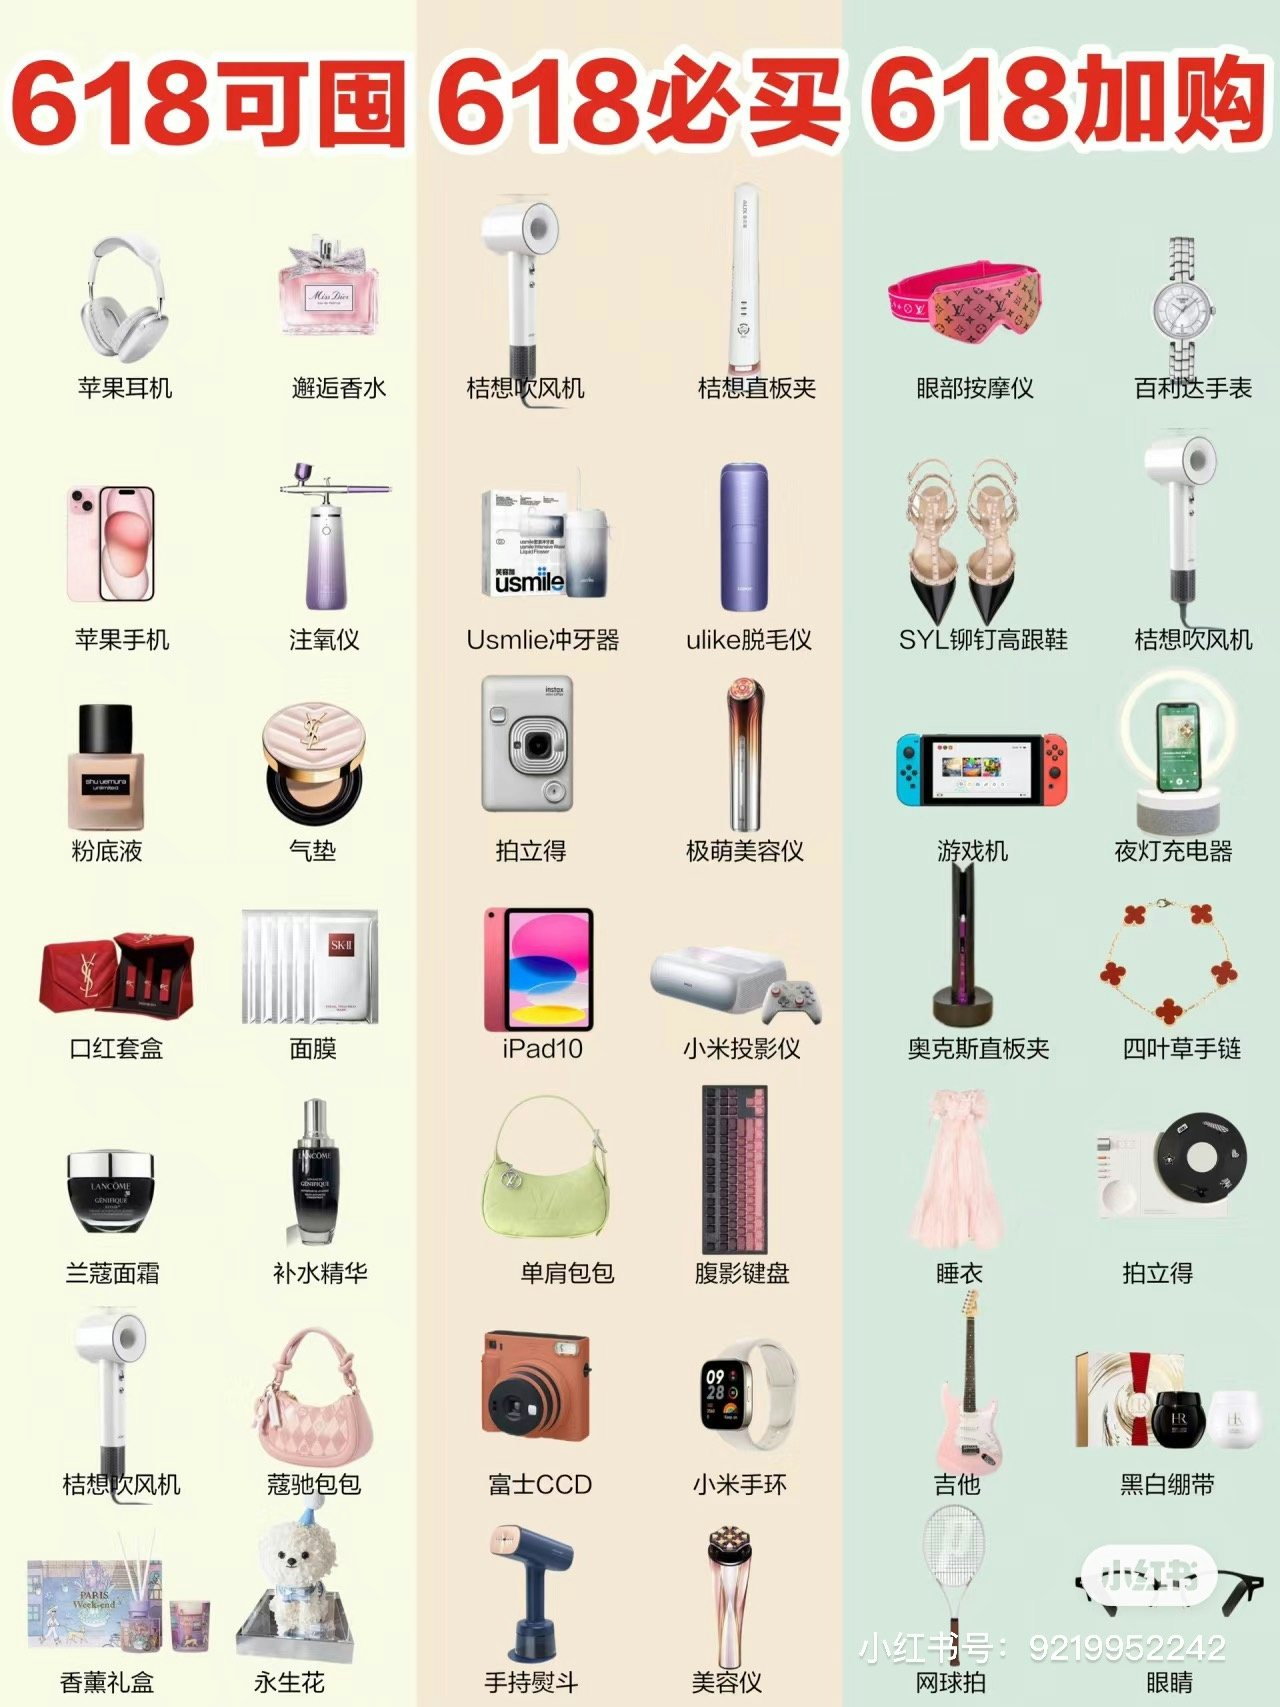 Xiaohongshu 618 user shopping list recommendation. Image: Xiaohongshu